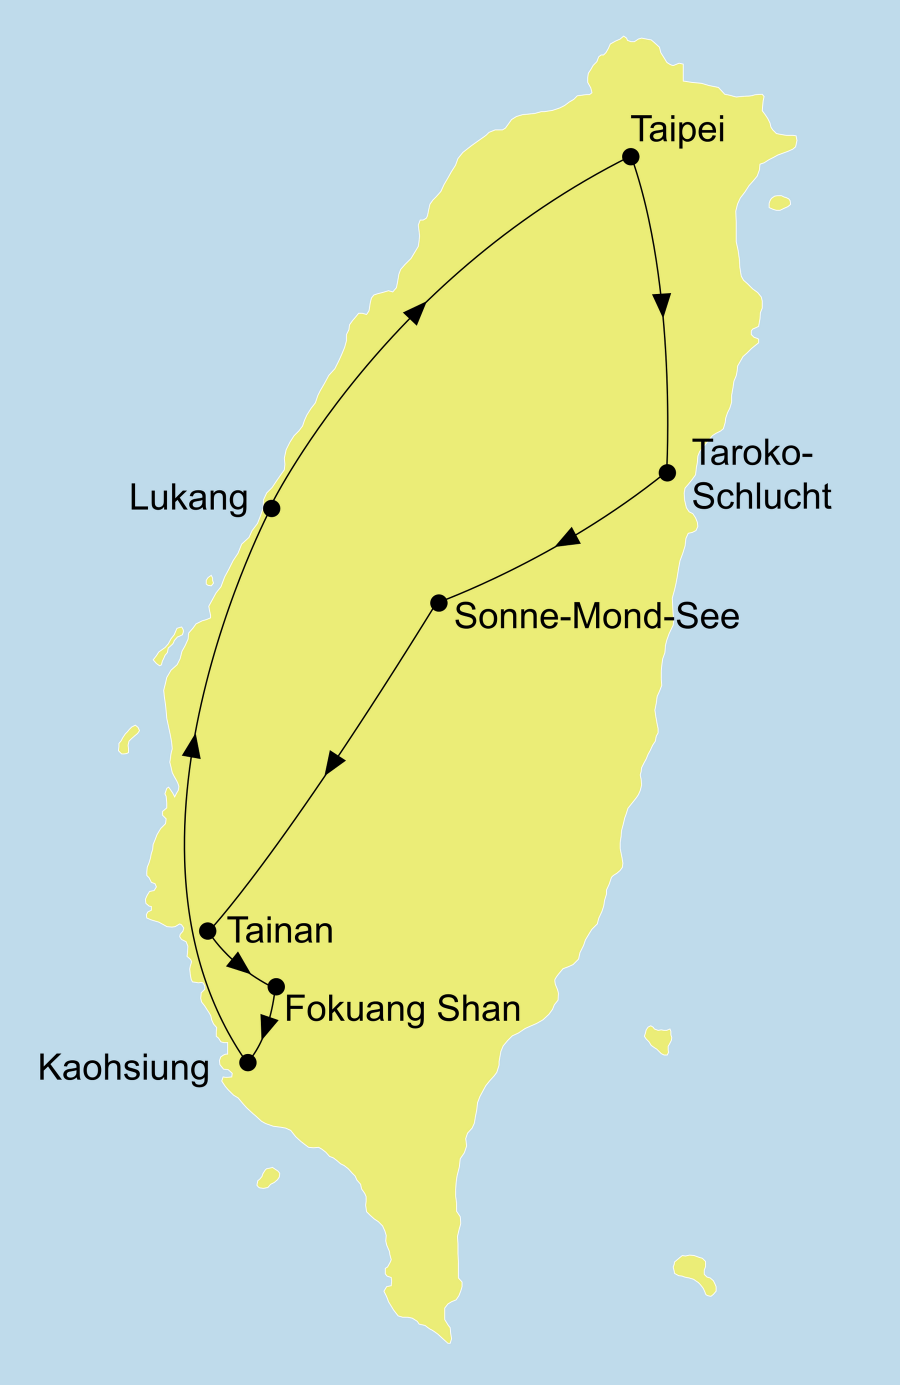 Die Best of Taiwan Rundreis führt von Taipeh über Taroko Nationalpark, Sonne-Mond-See, Tainan, Foguangshan Kloster, Kaohsiung, Lukang zurück nach Taipeh.